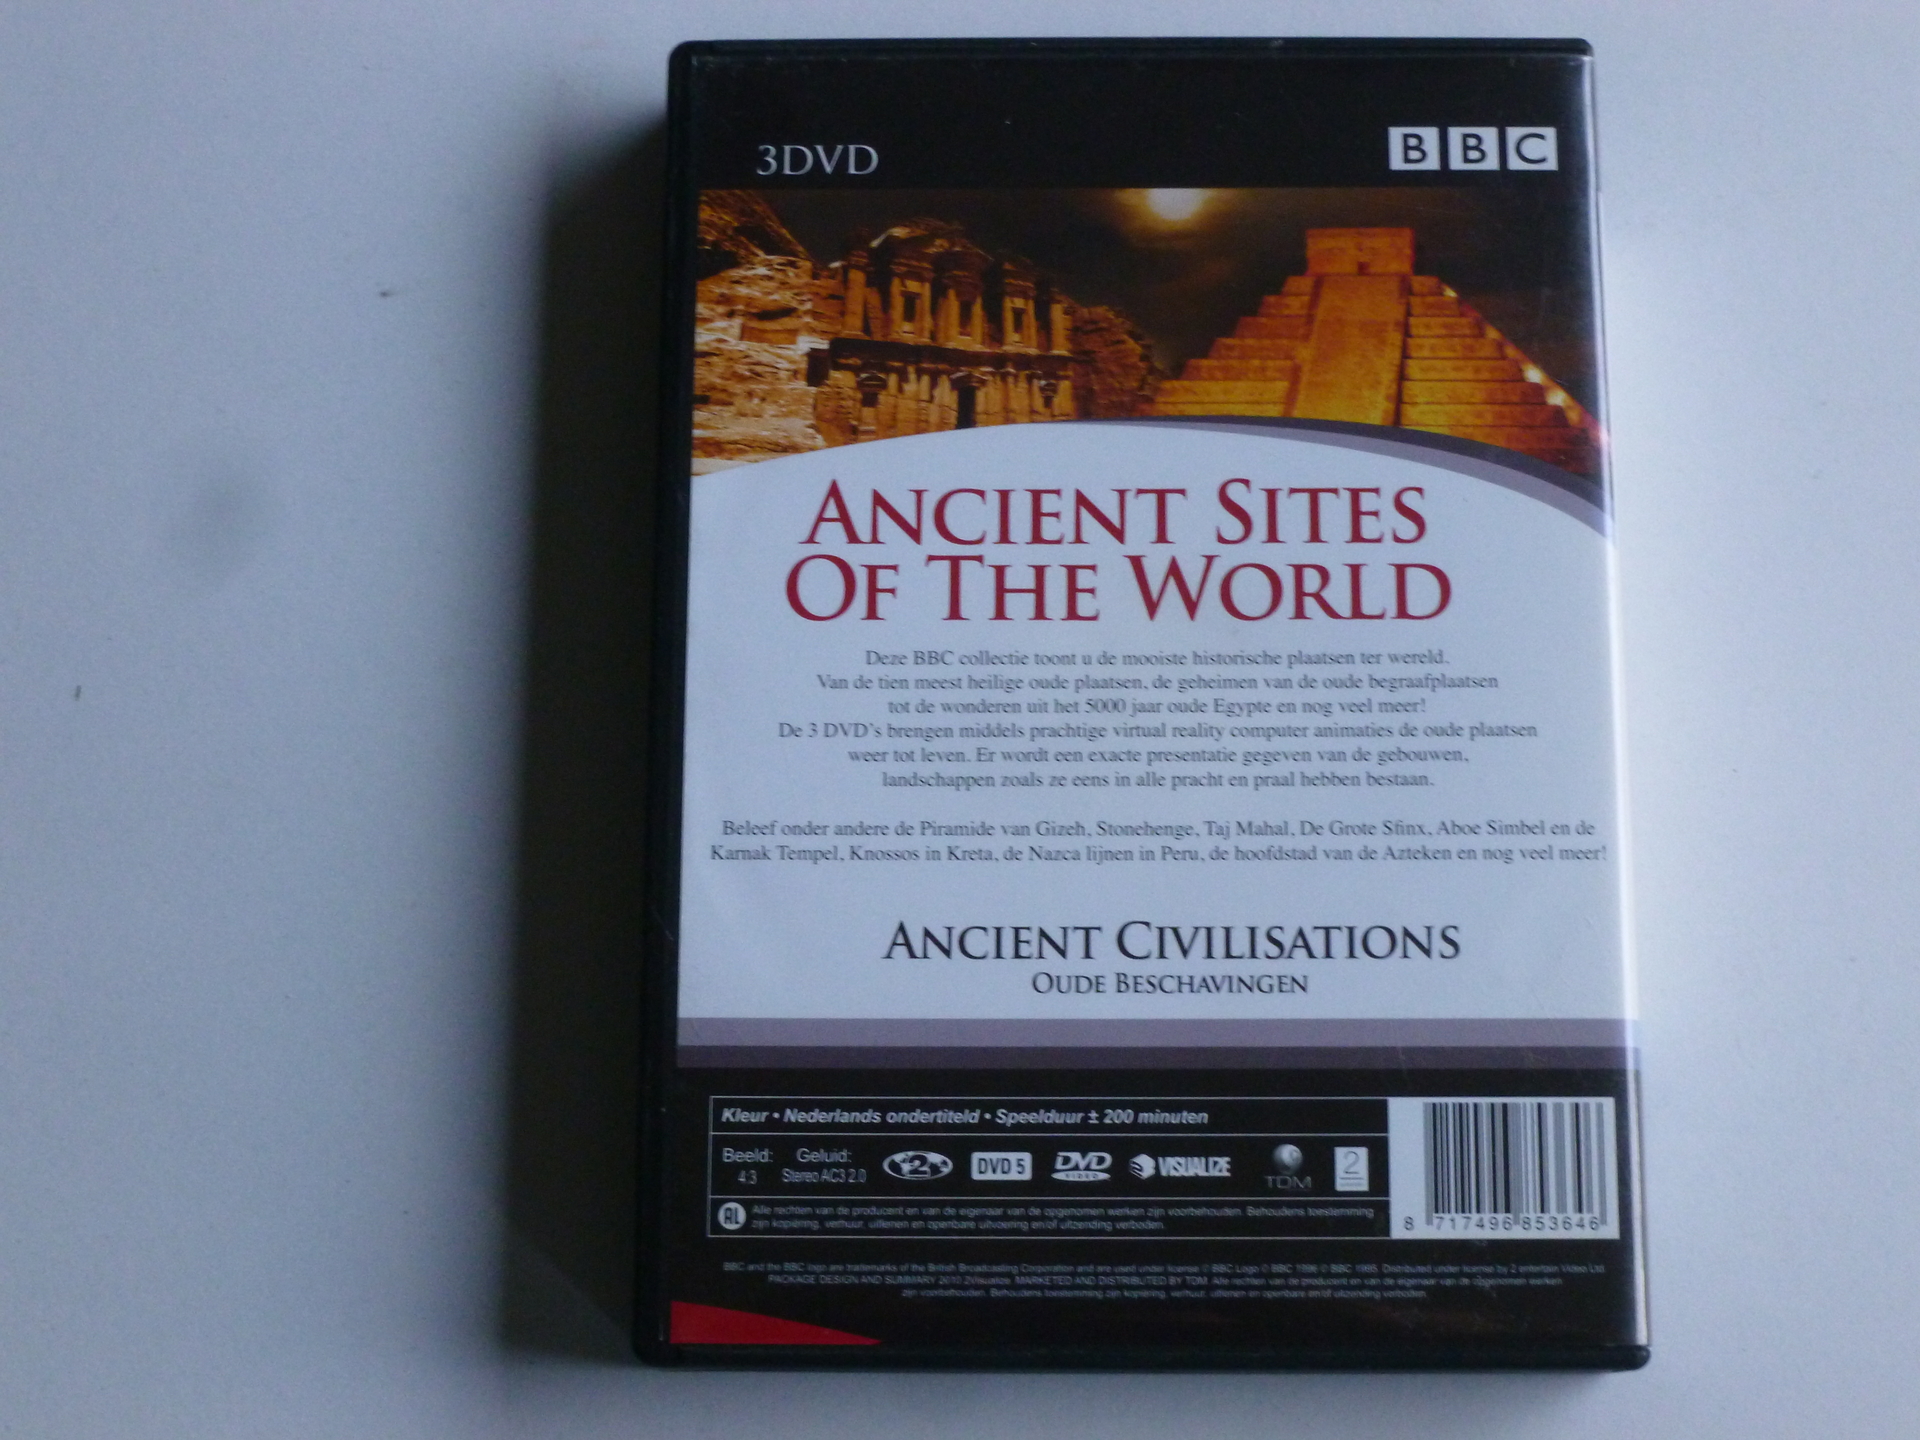 Gepensioneerde leren Zilver Ancient Sites of the World - Oude beschavingen (3 DVD) BBC - Tweedehands CD